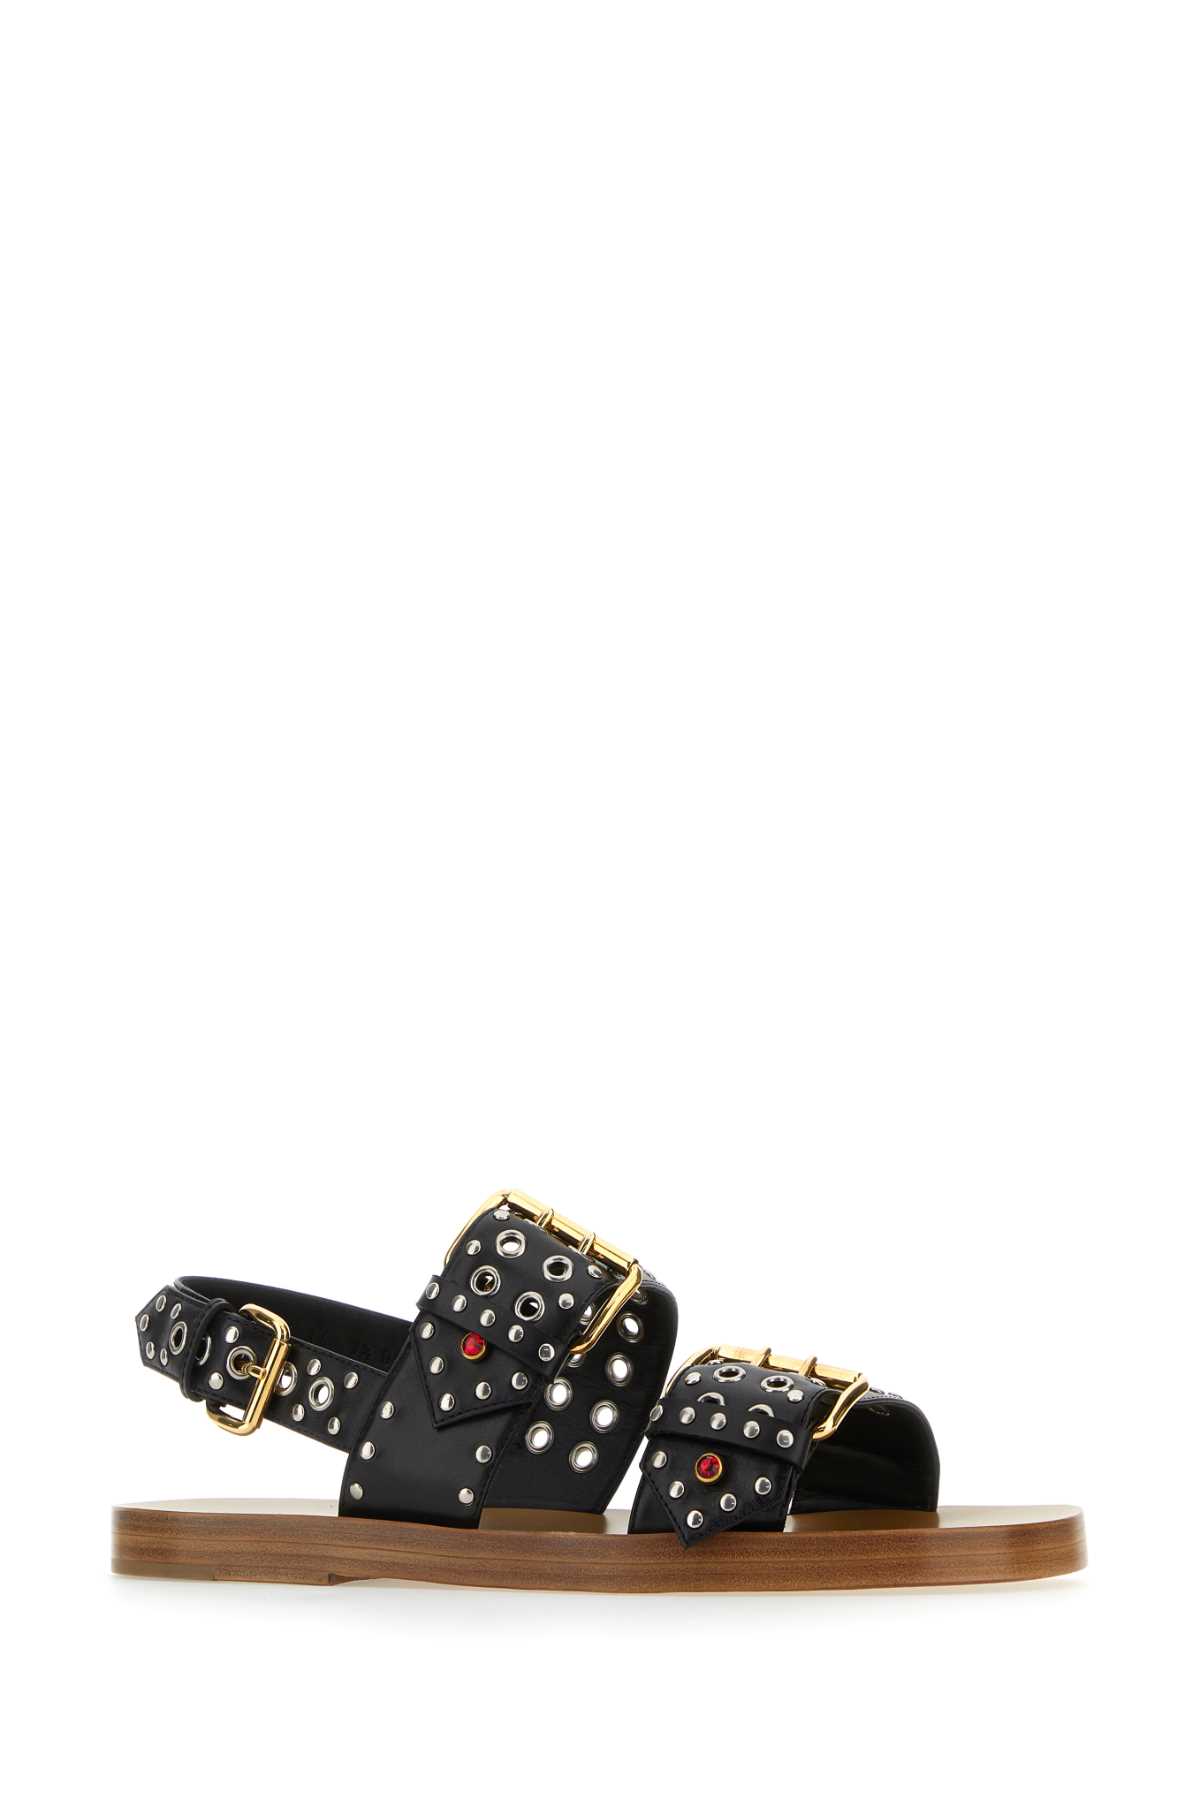 Shop Gucci Embellished Leather Sandals In Black